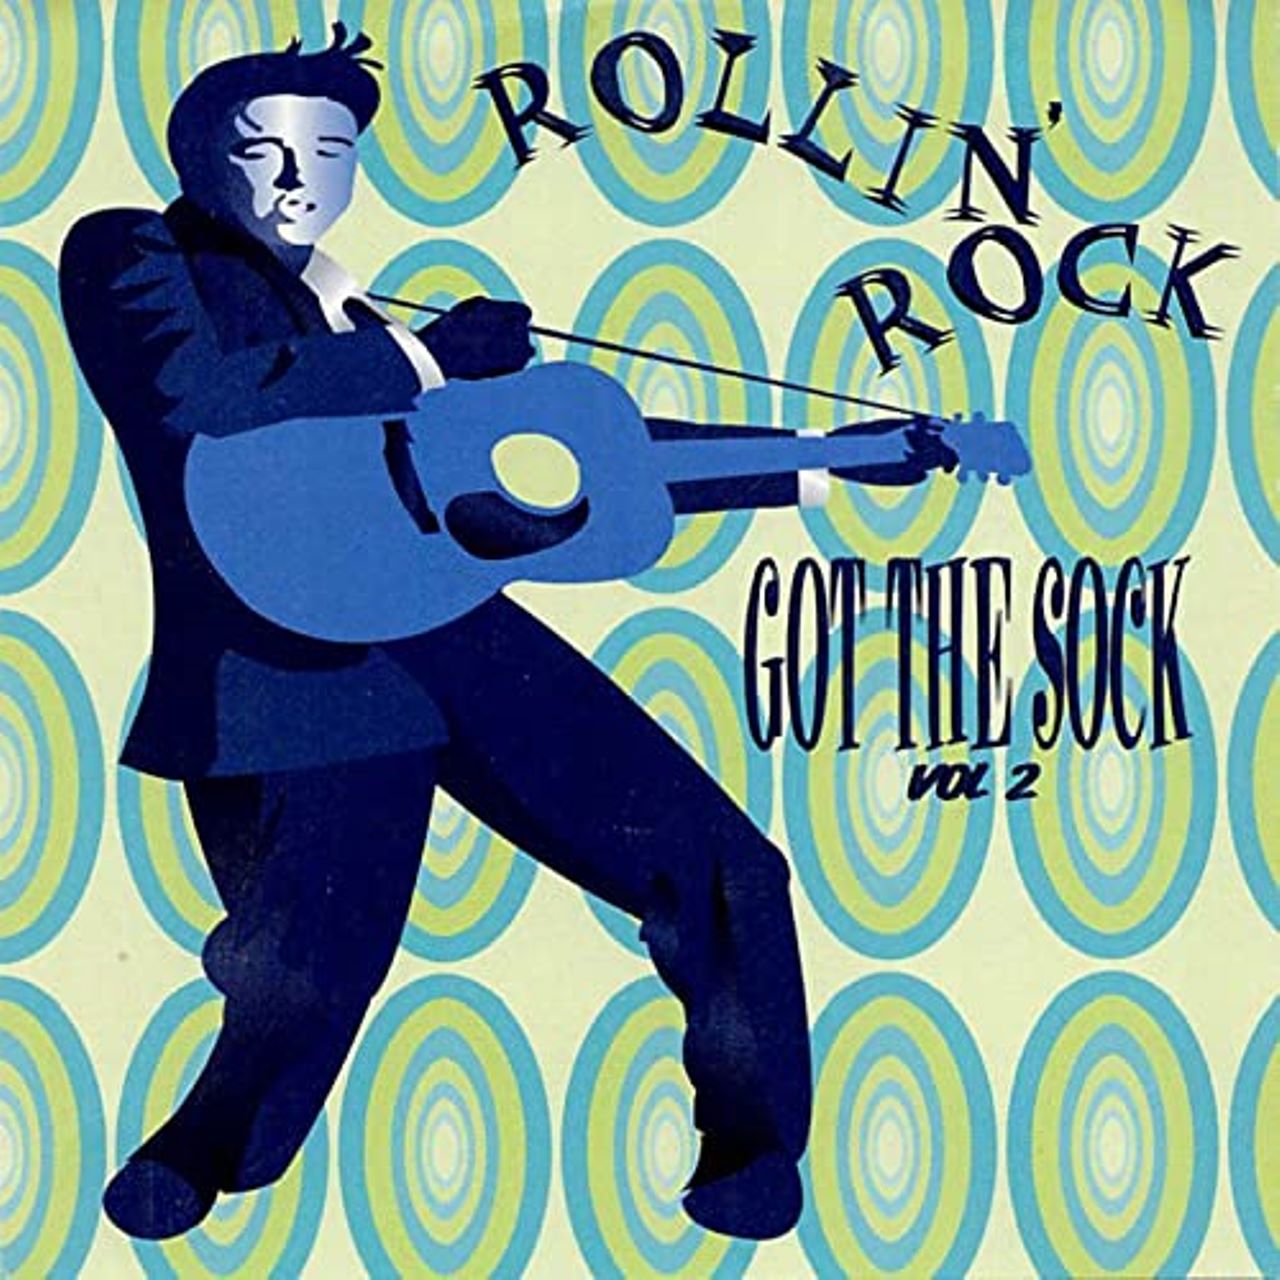 A.A.V.V. - Rollin’ Rock Got The Shock, Vol. 2 cover album